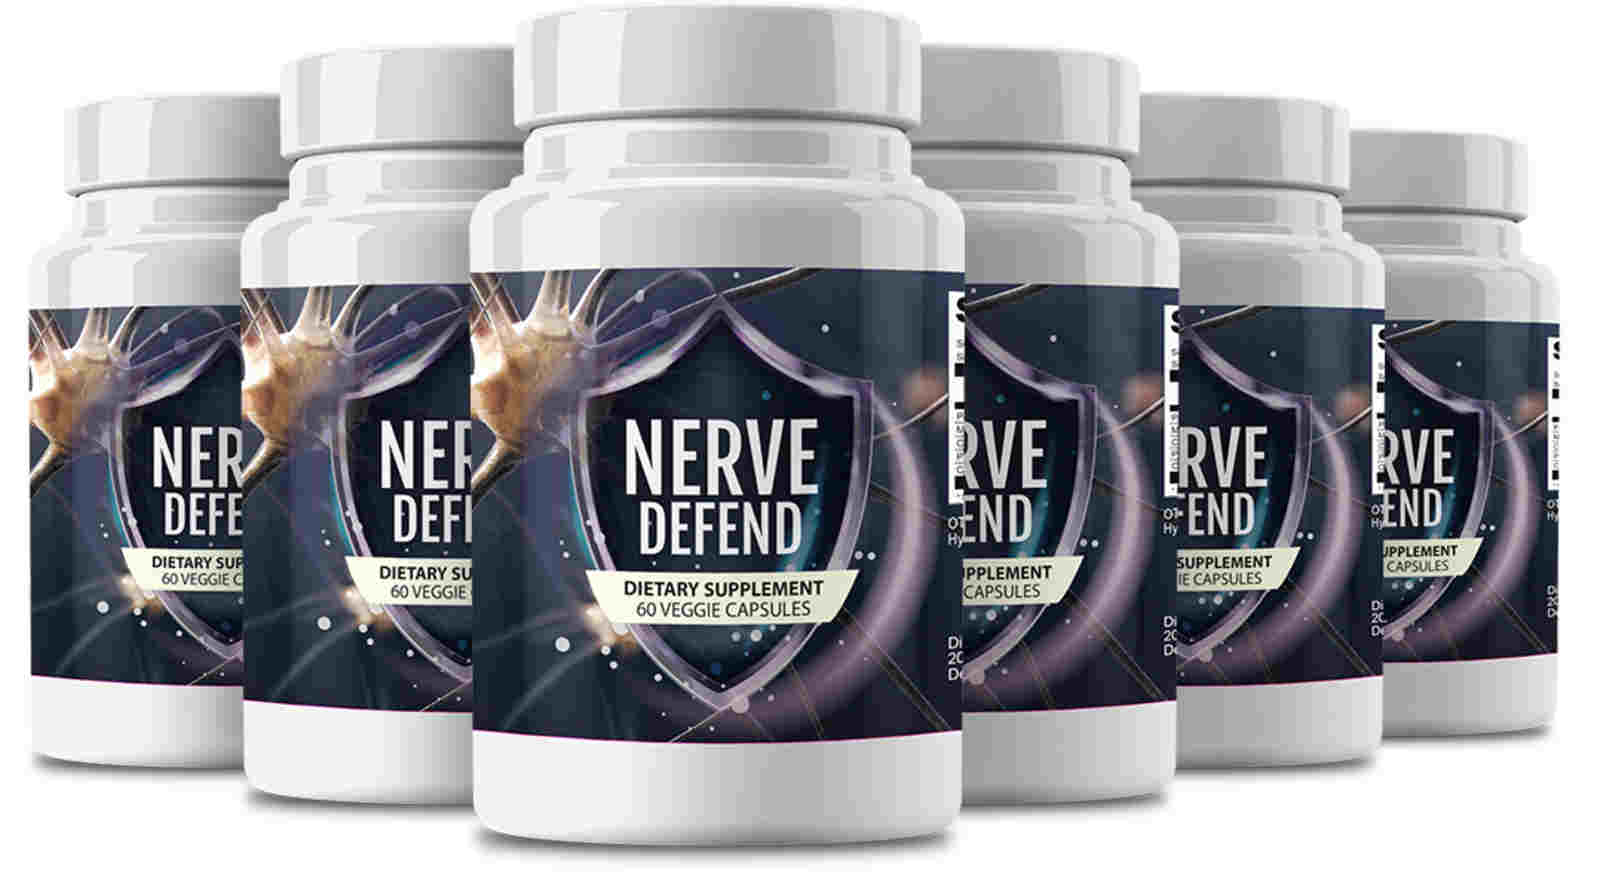 nerve defend pain